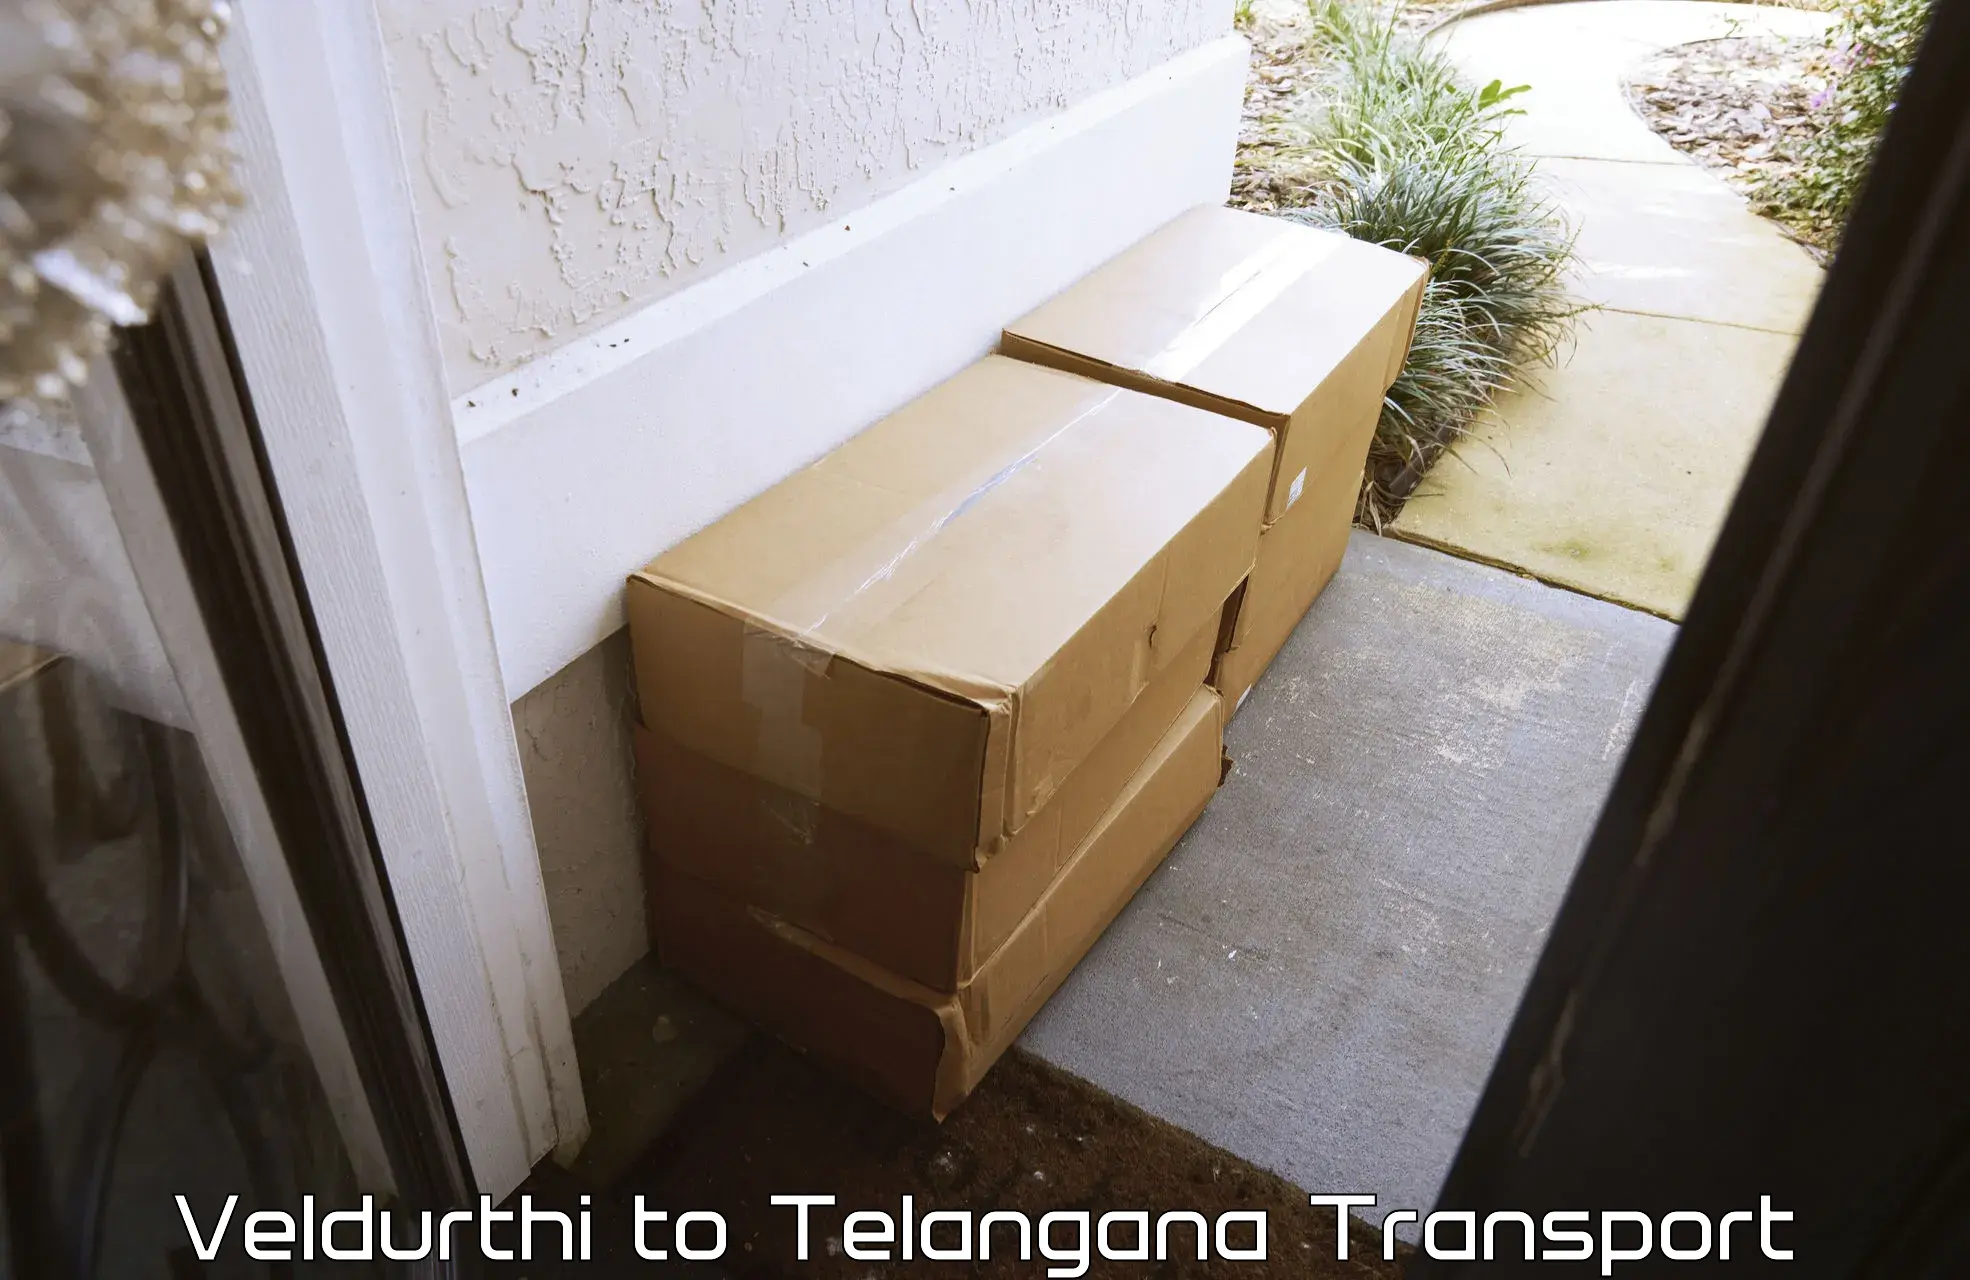 Cargo transportation services Veldurthi to Shankarpalle